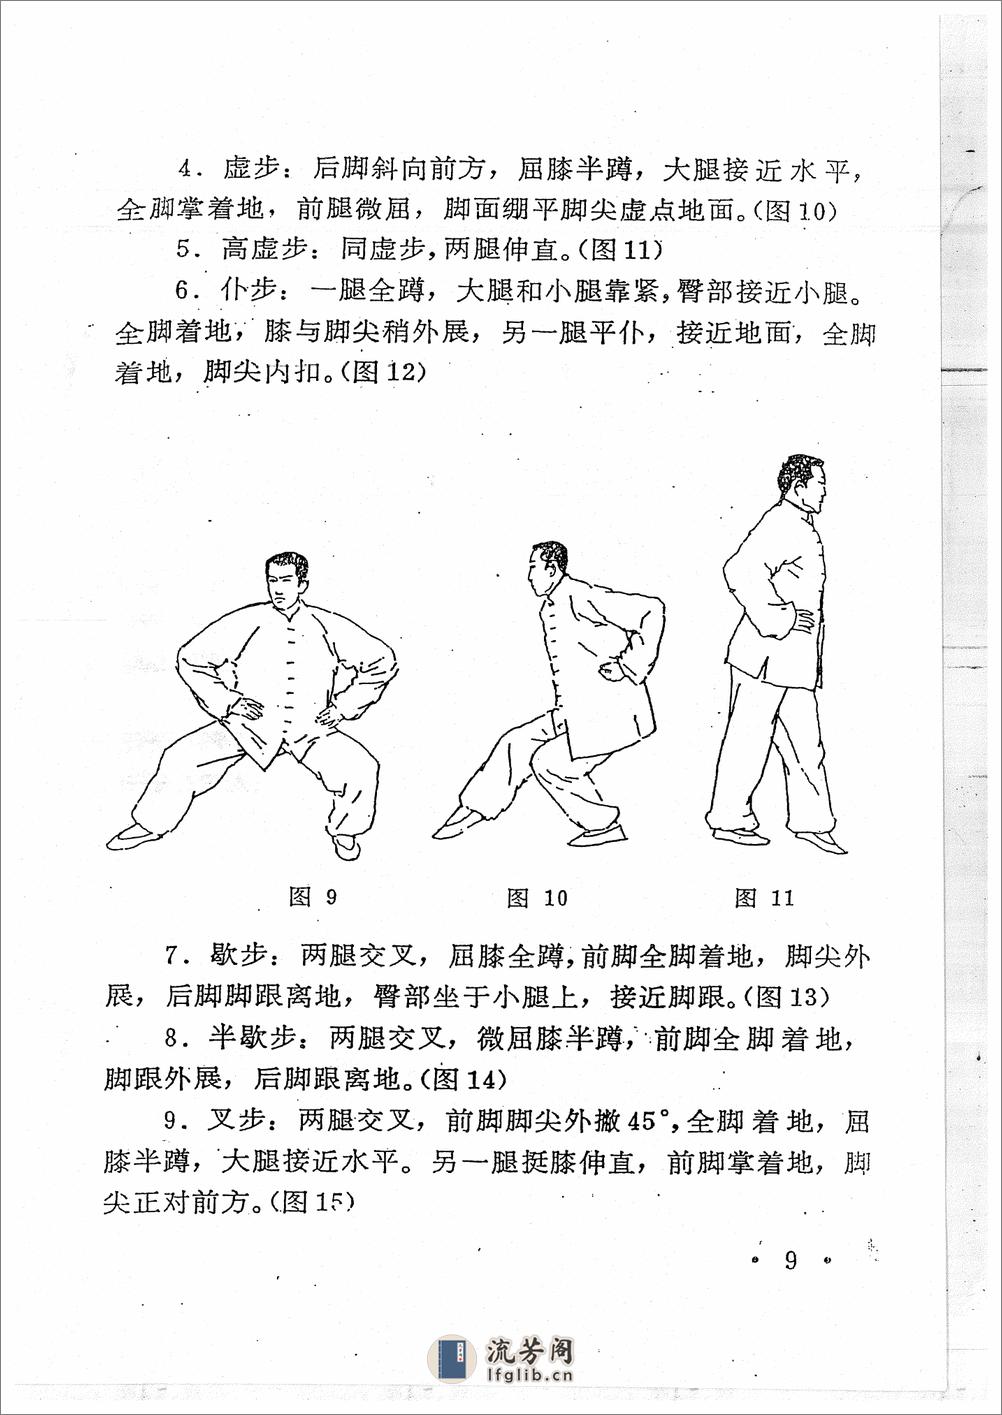 《青萍剑》贾勃生、刘滋茂 - 第11页预览图